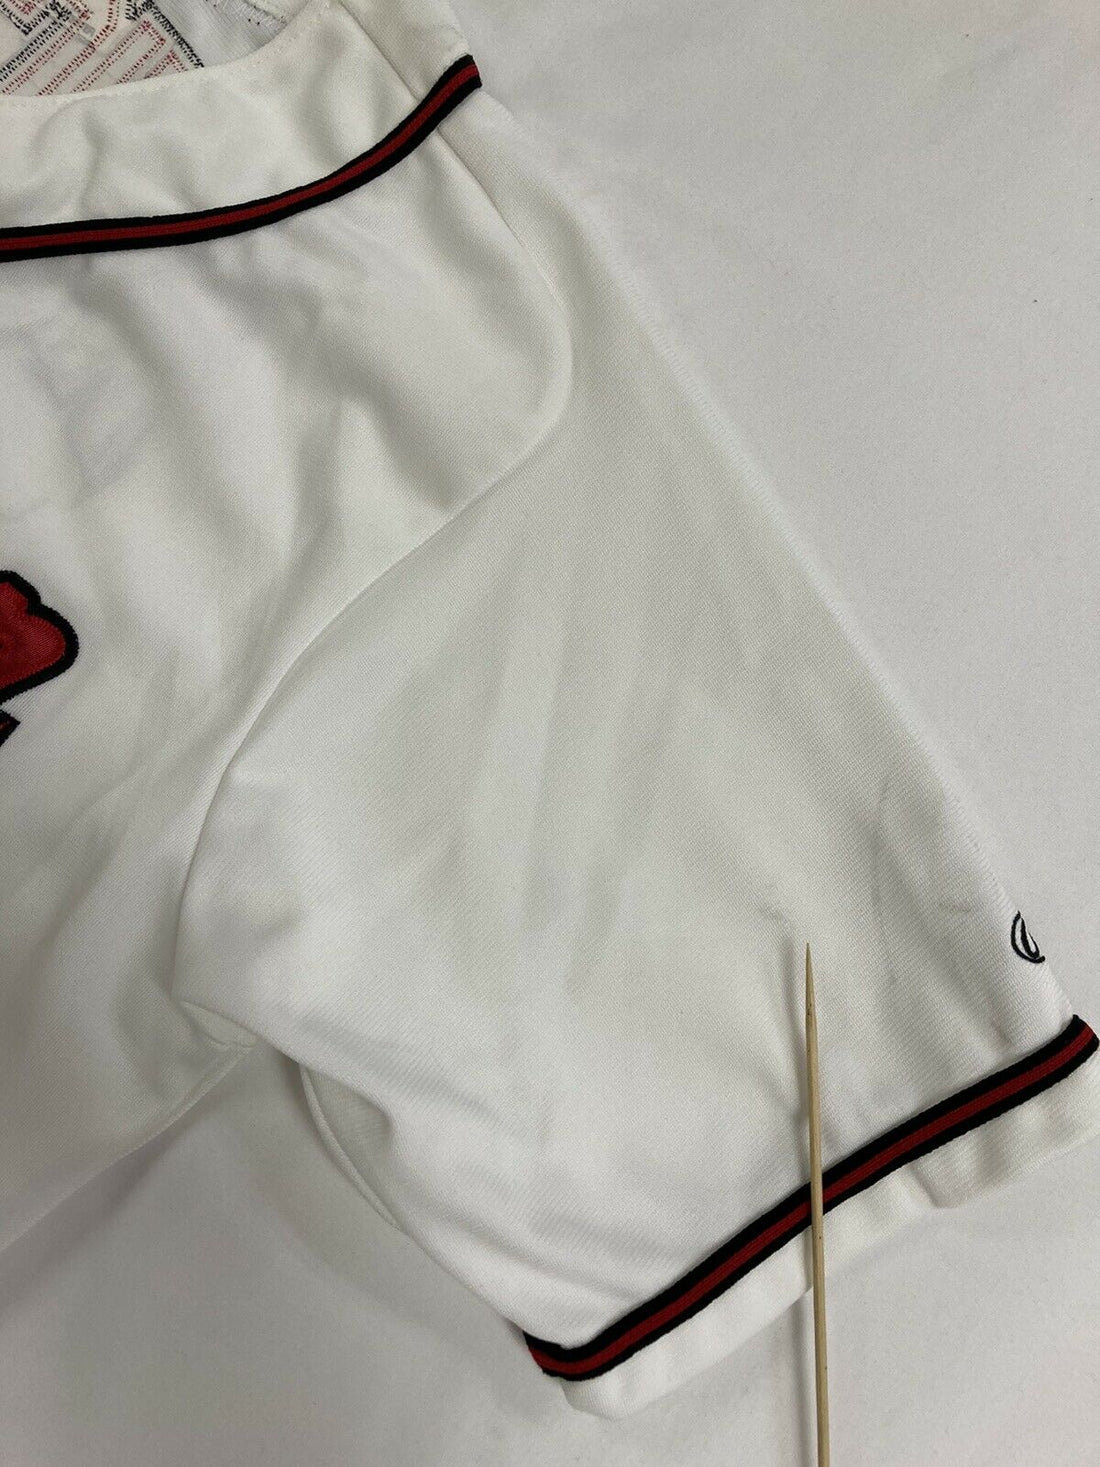 Reichel #17 Arlington Rawlings Baseball Jersey Size Large White Stitched Sewn